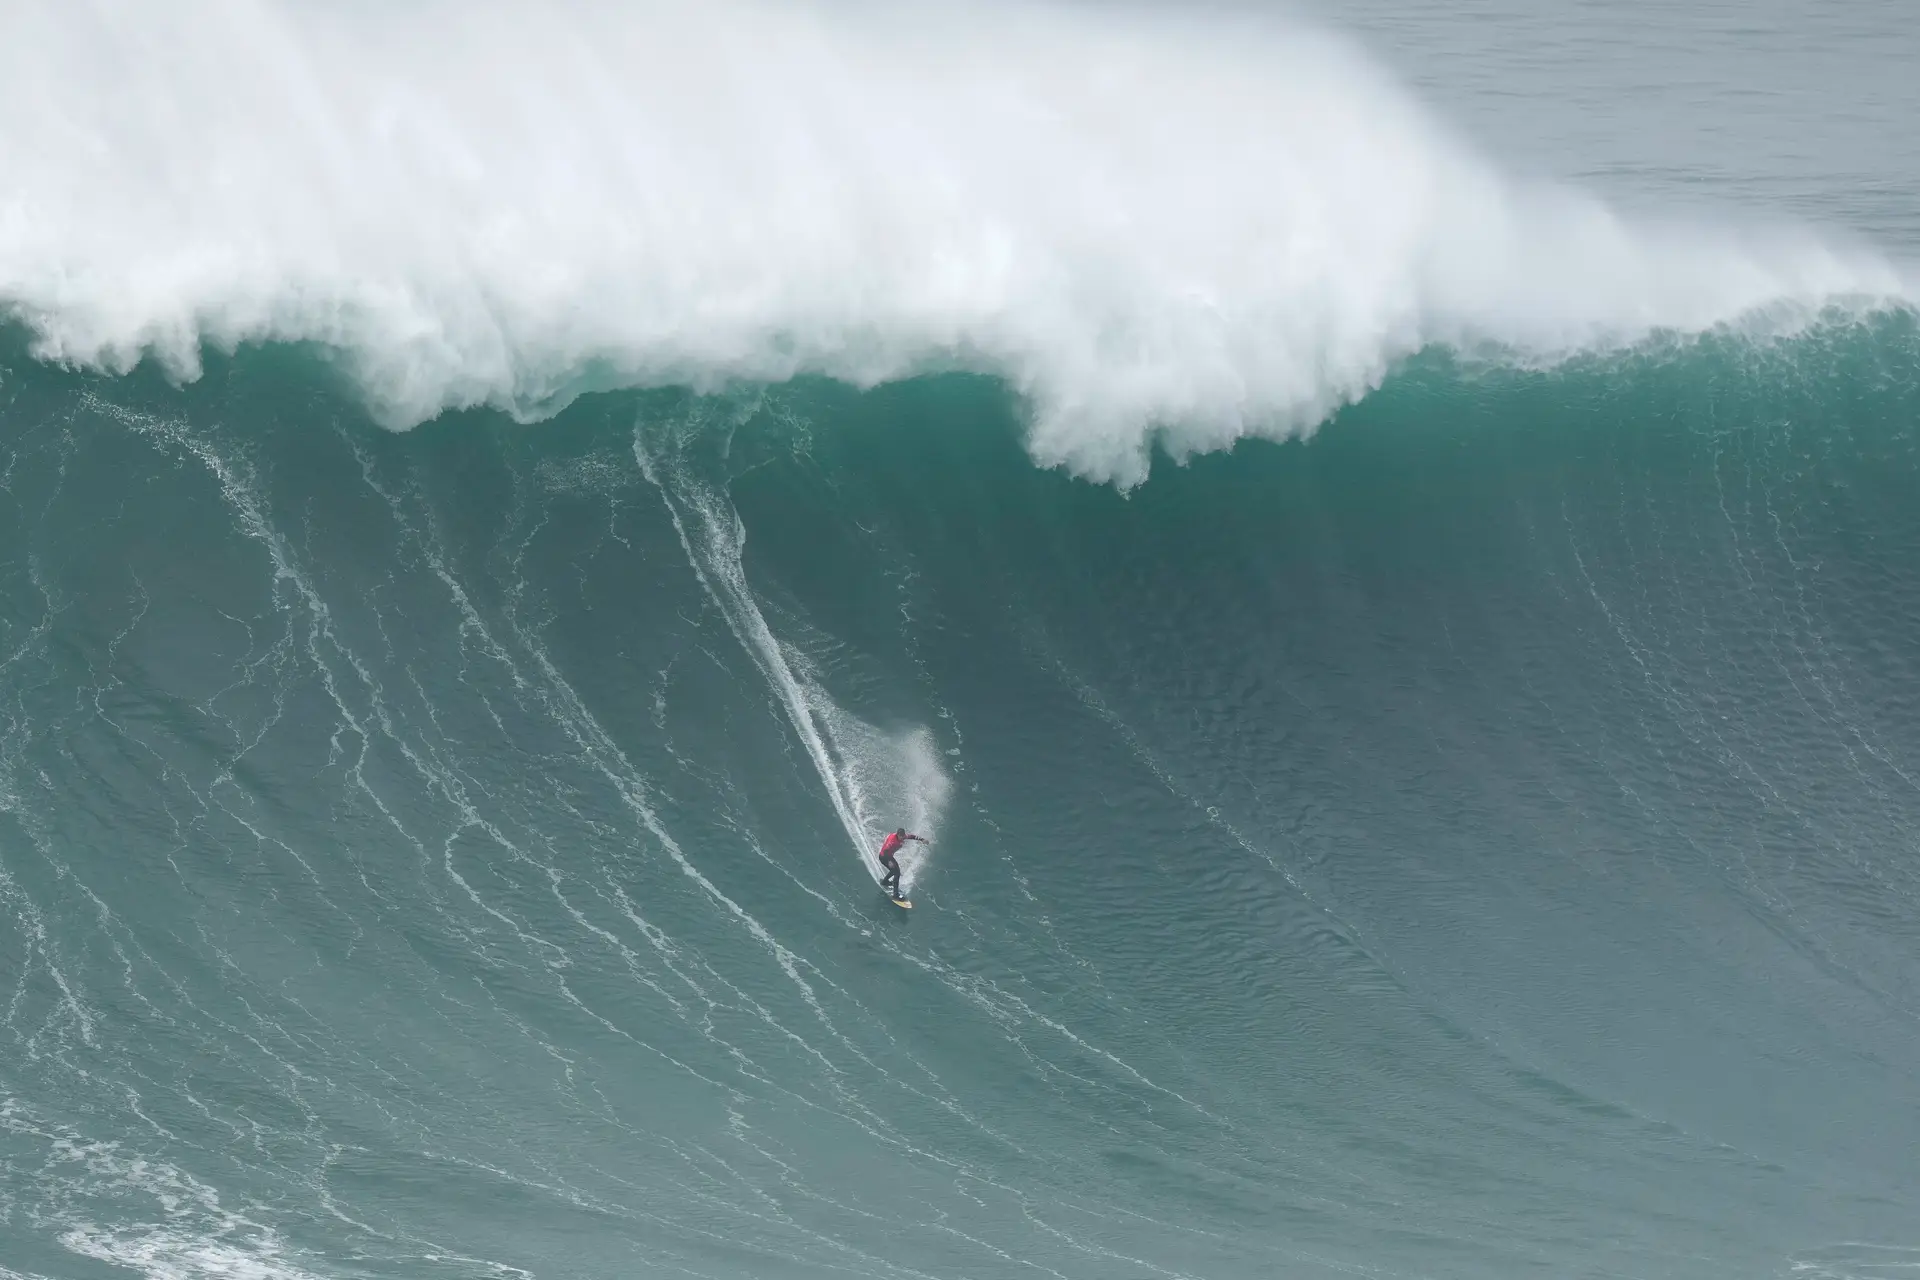 Nic von Rupp "orgulhoso" por representar Portugal nas ondas gigantes do Havai